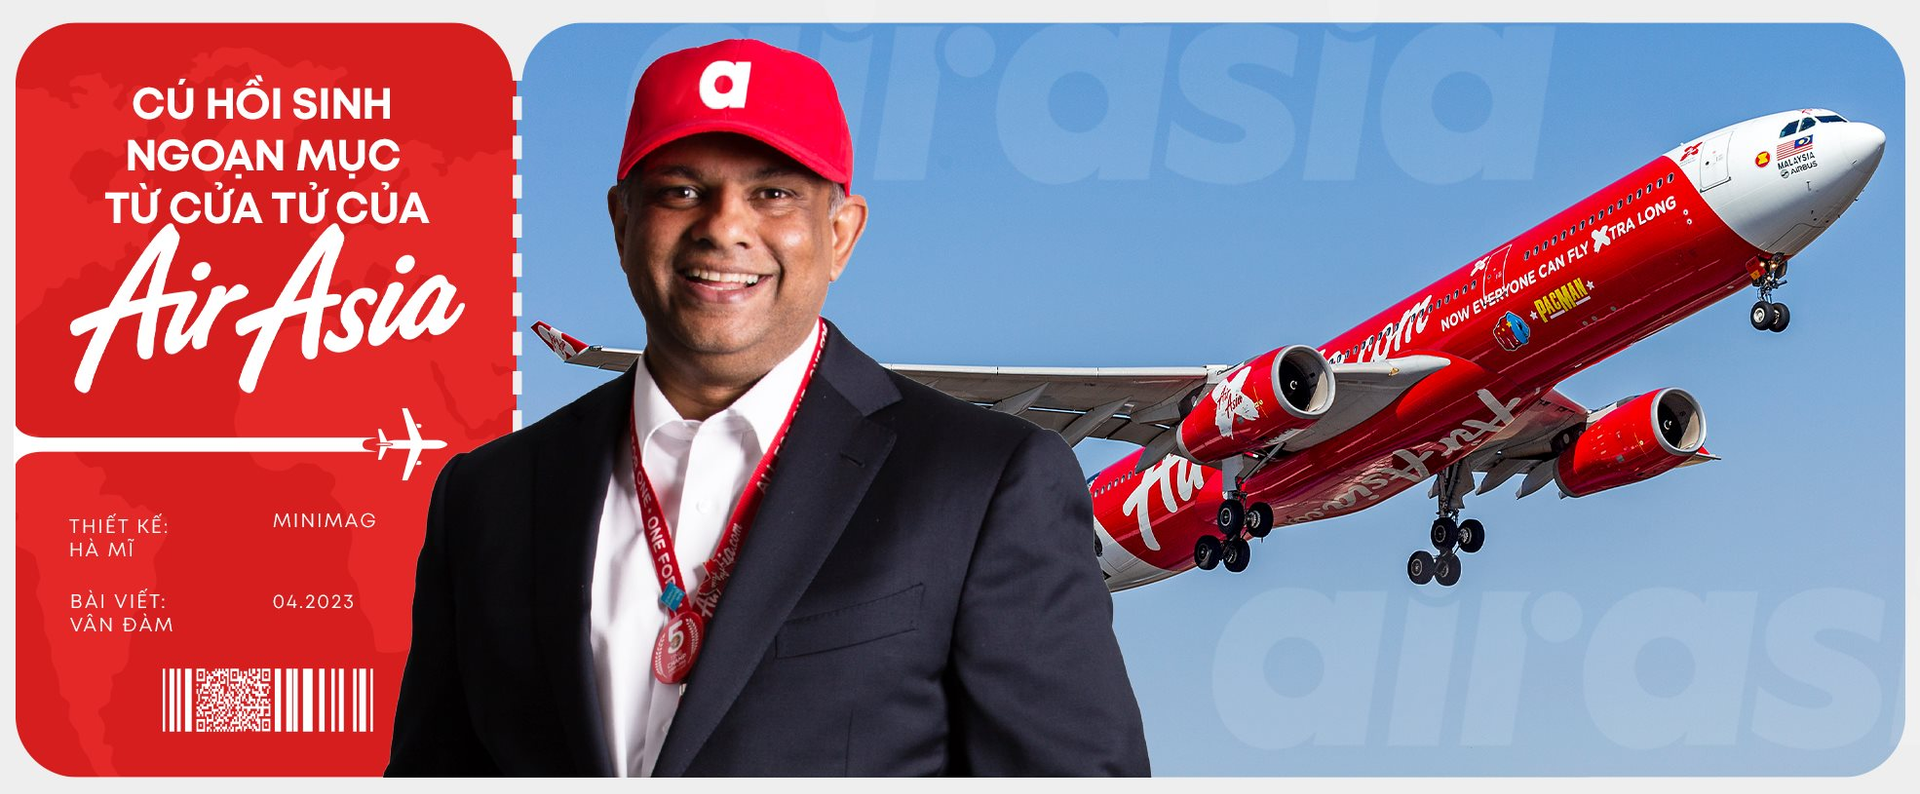 CEO Airasia: ‘Cắm’ nhà lập hãng hàng không, đối mặt với trải nghiệm ‘suýt chết’ và lời khẳng định ‘chúng tôi sẽ mạnh mẽ hơn’ - Ảnh 2.